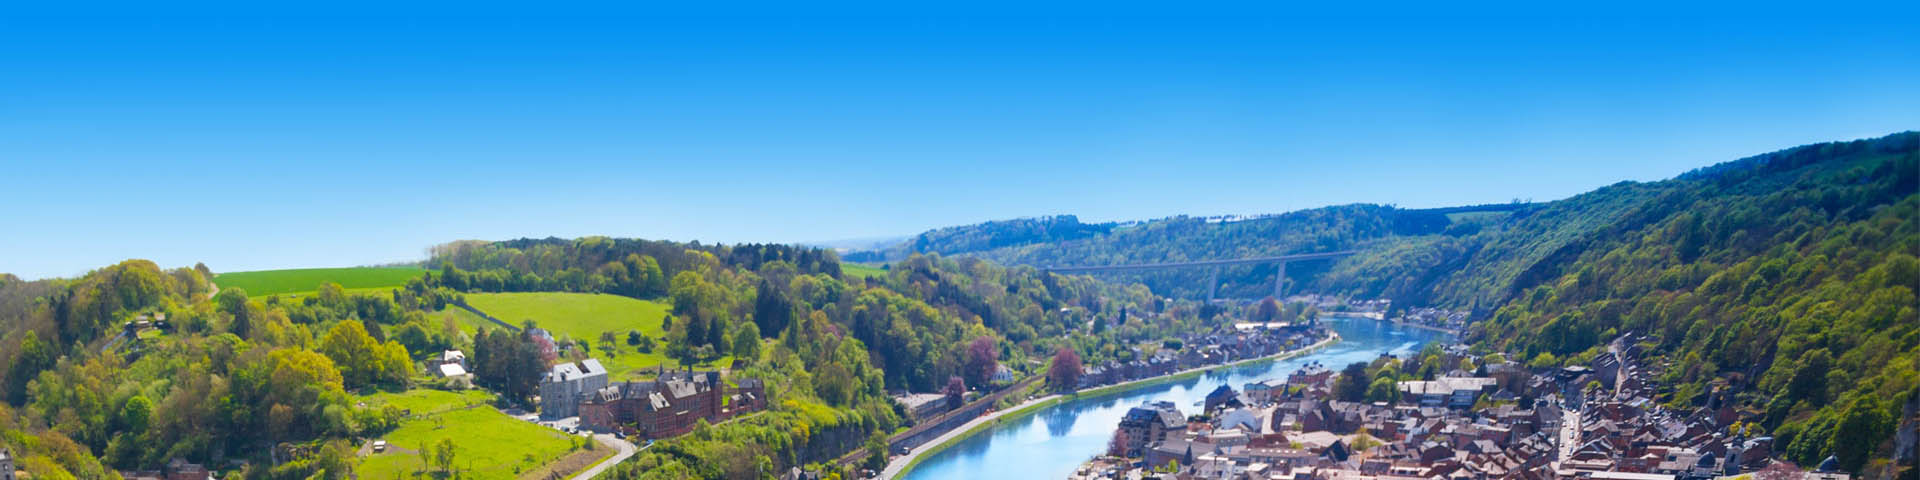 Uitzicht over groen heuvelachtig landschap met rivier dat door een stad loopt in België